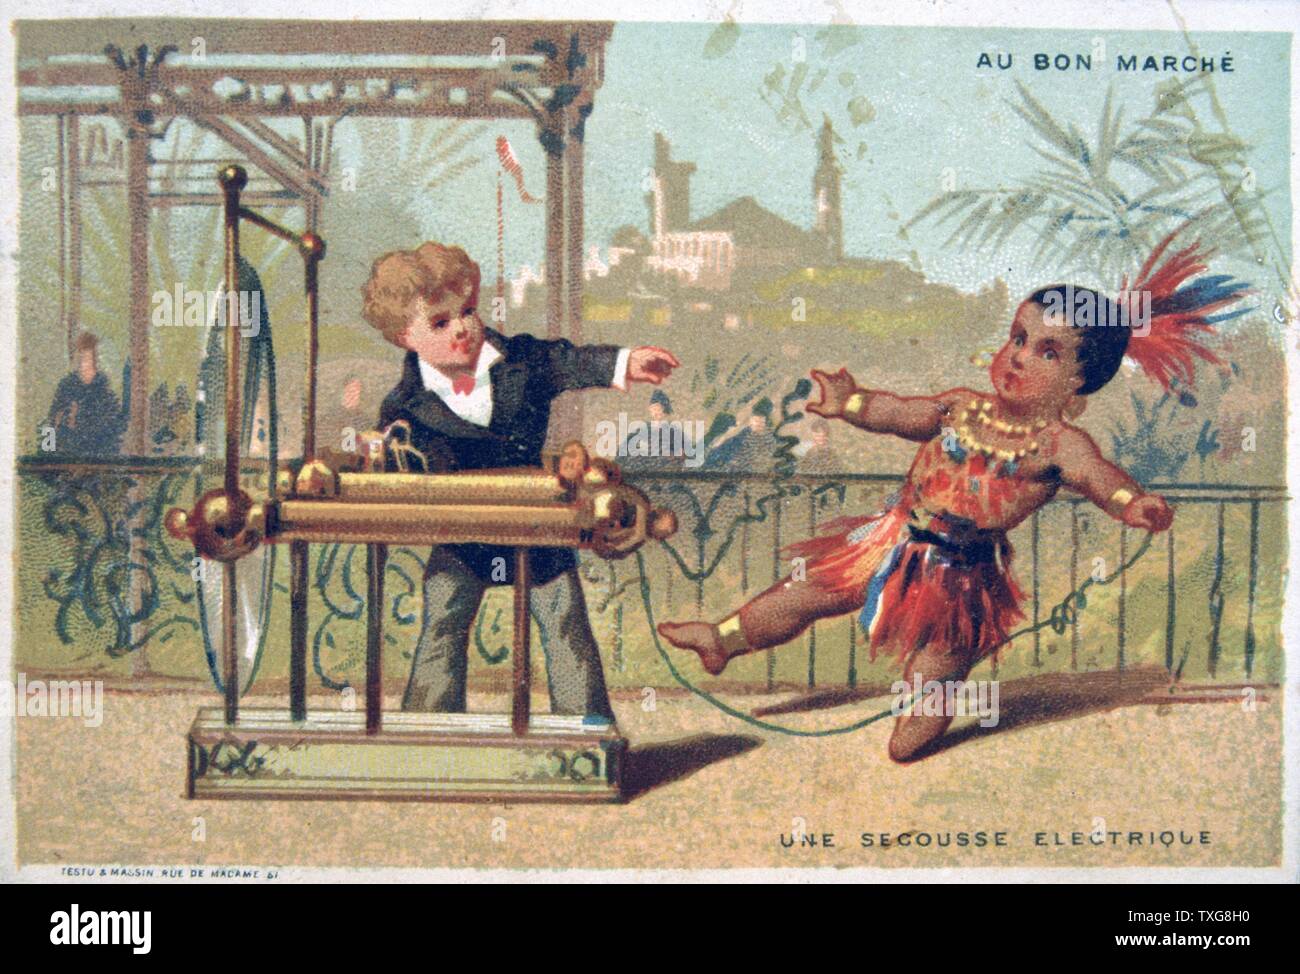 Una scossa elettrica piccolo bimbo mostrato dando un native american bambino un ammortizzatore con una statica della macchina elettrica. "Au Bon Marché" scheda commerciale, Parigi Foto Stock